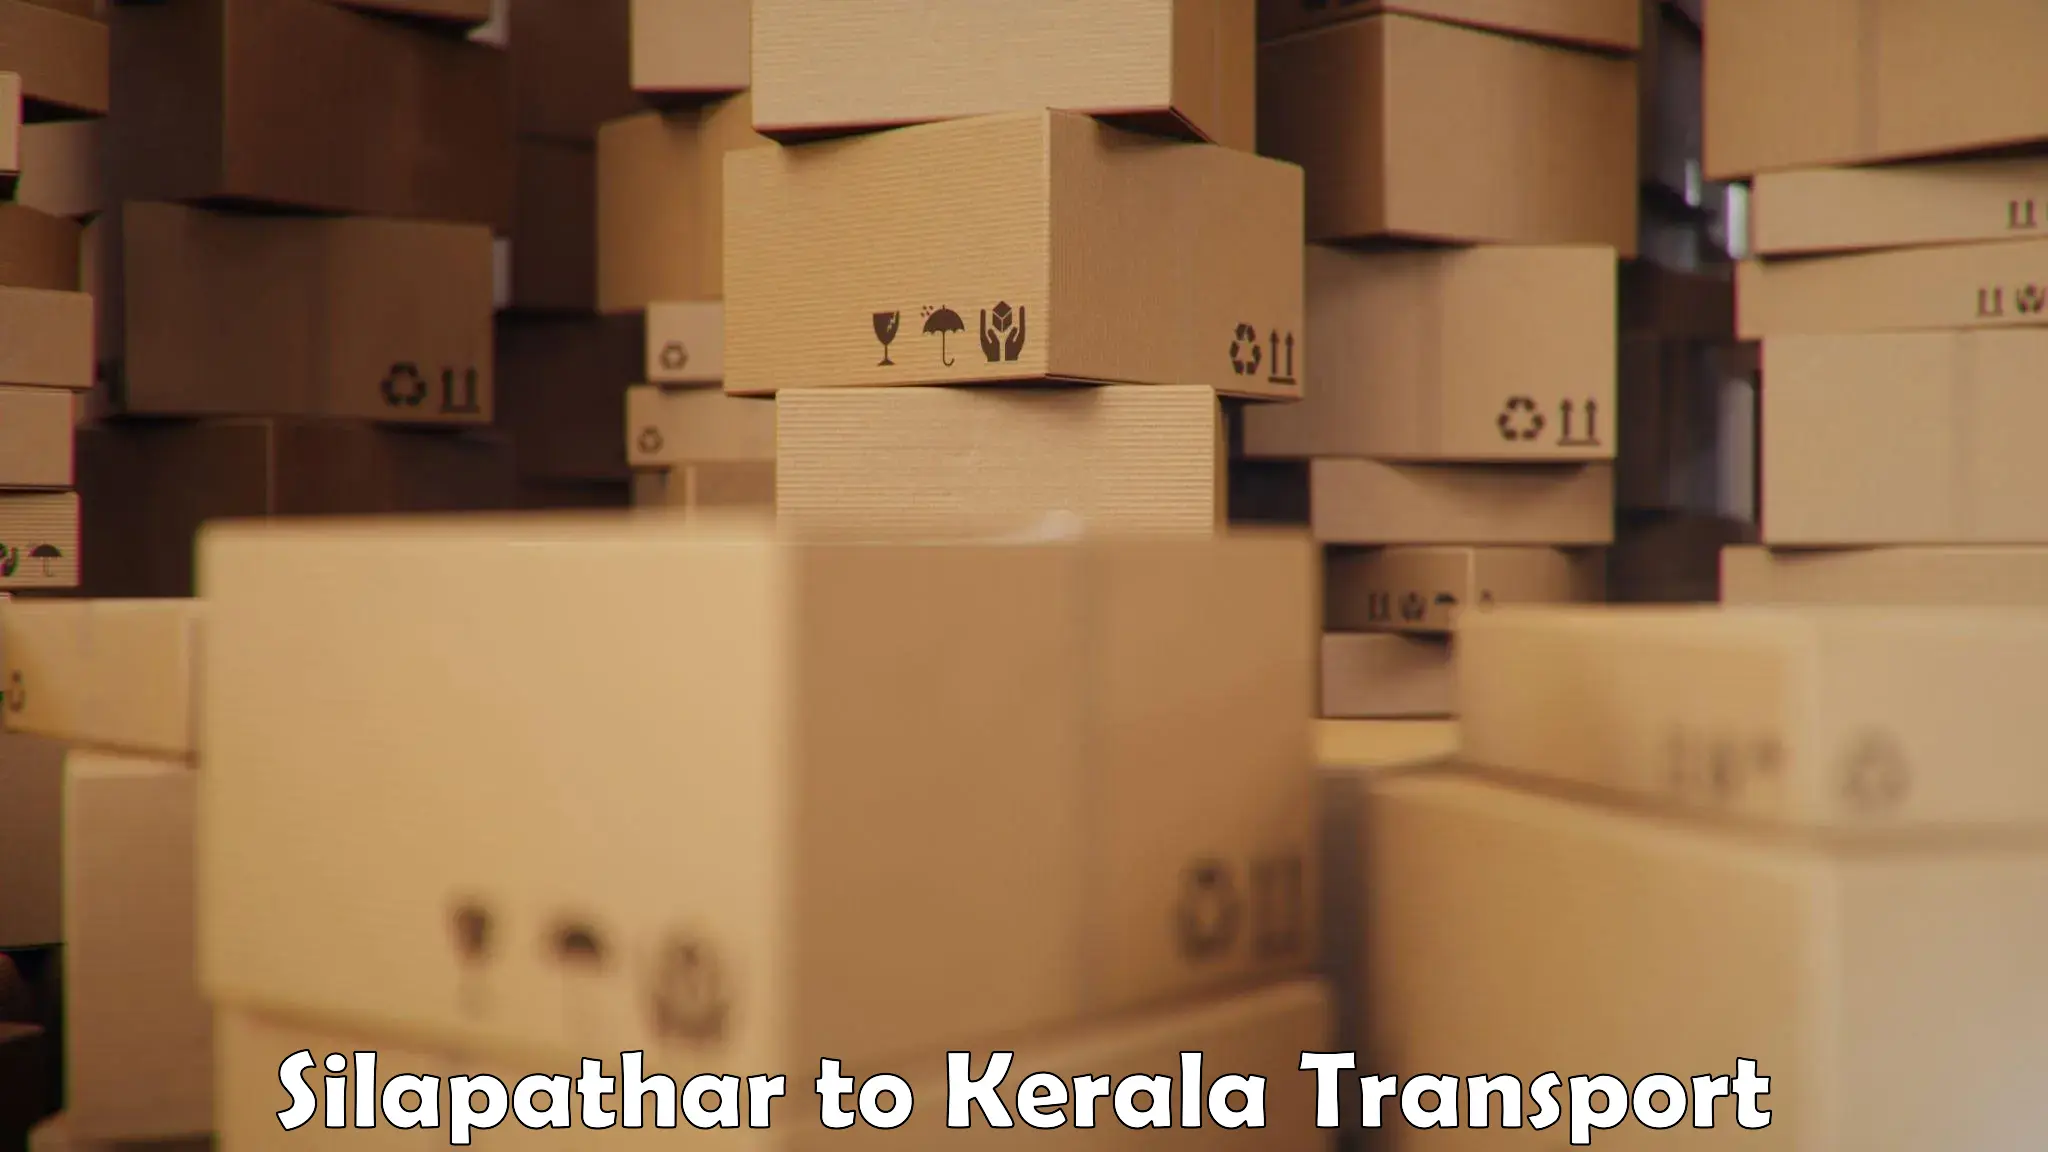 Shipping partner Silapathar to Karunagappally